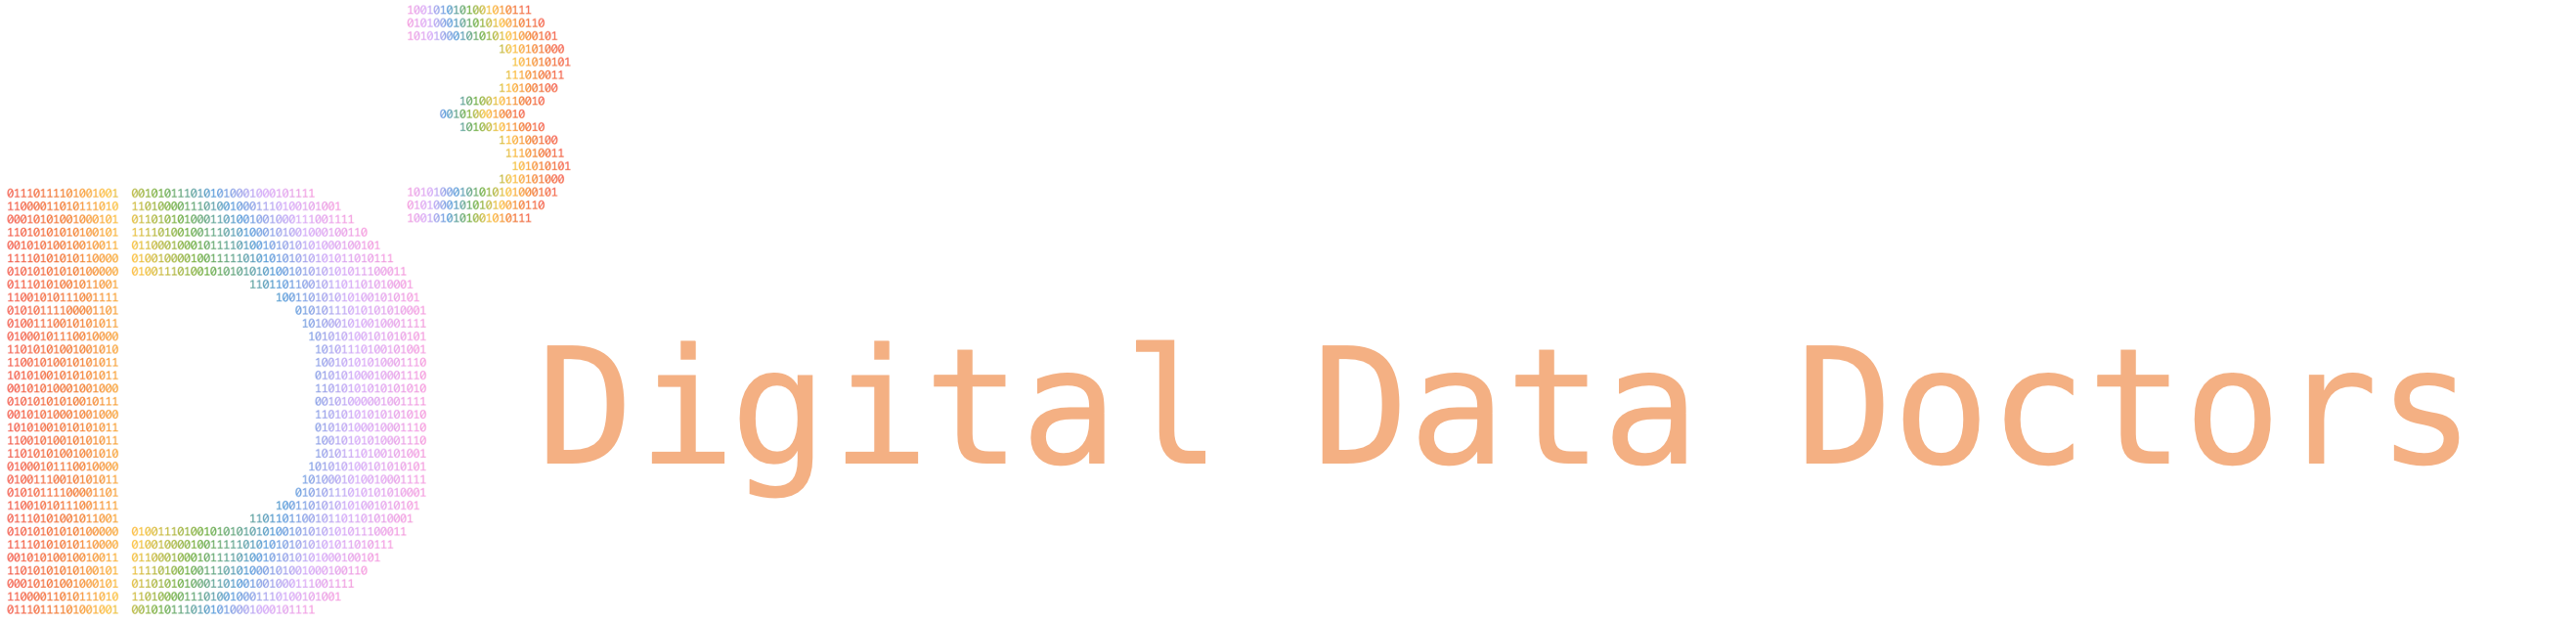 Digital Data Doctors